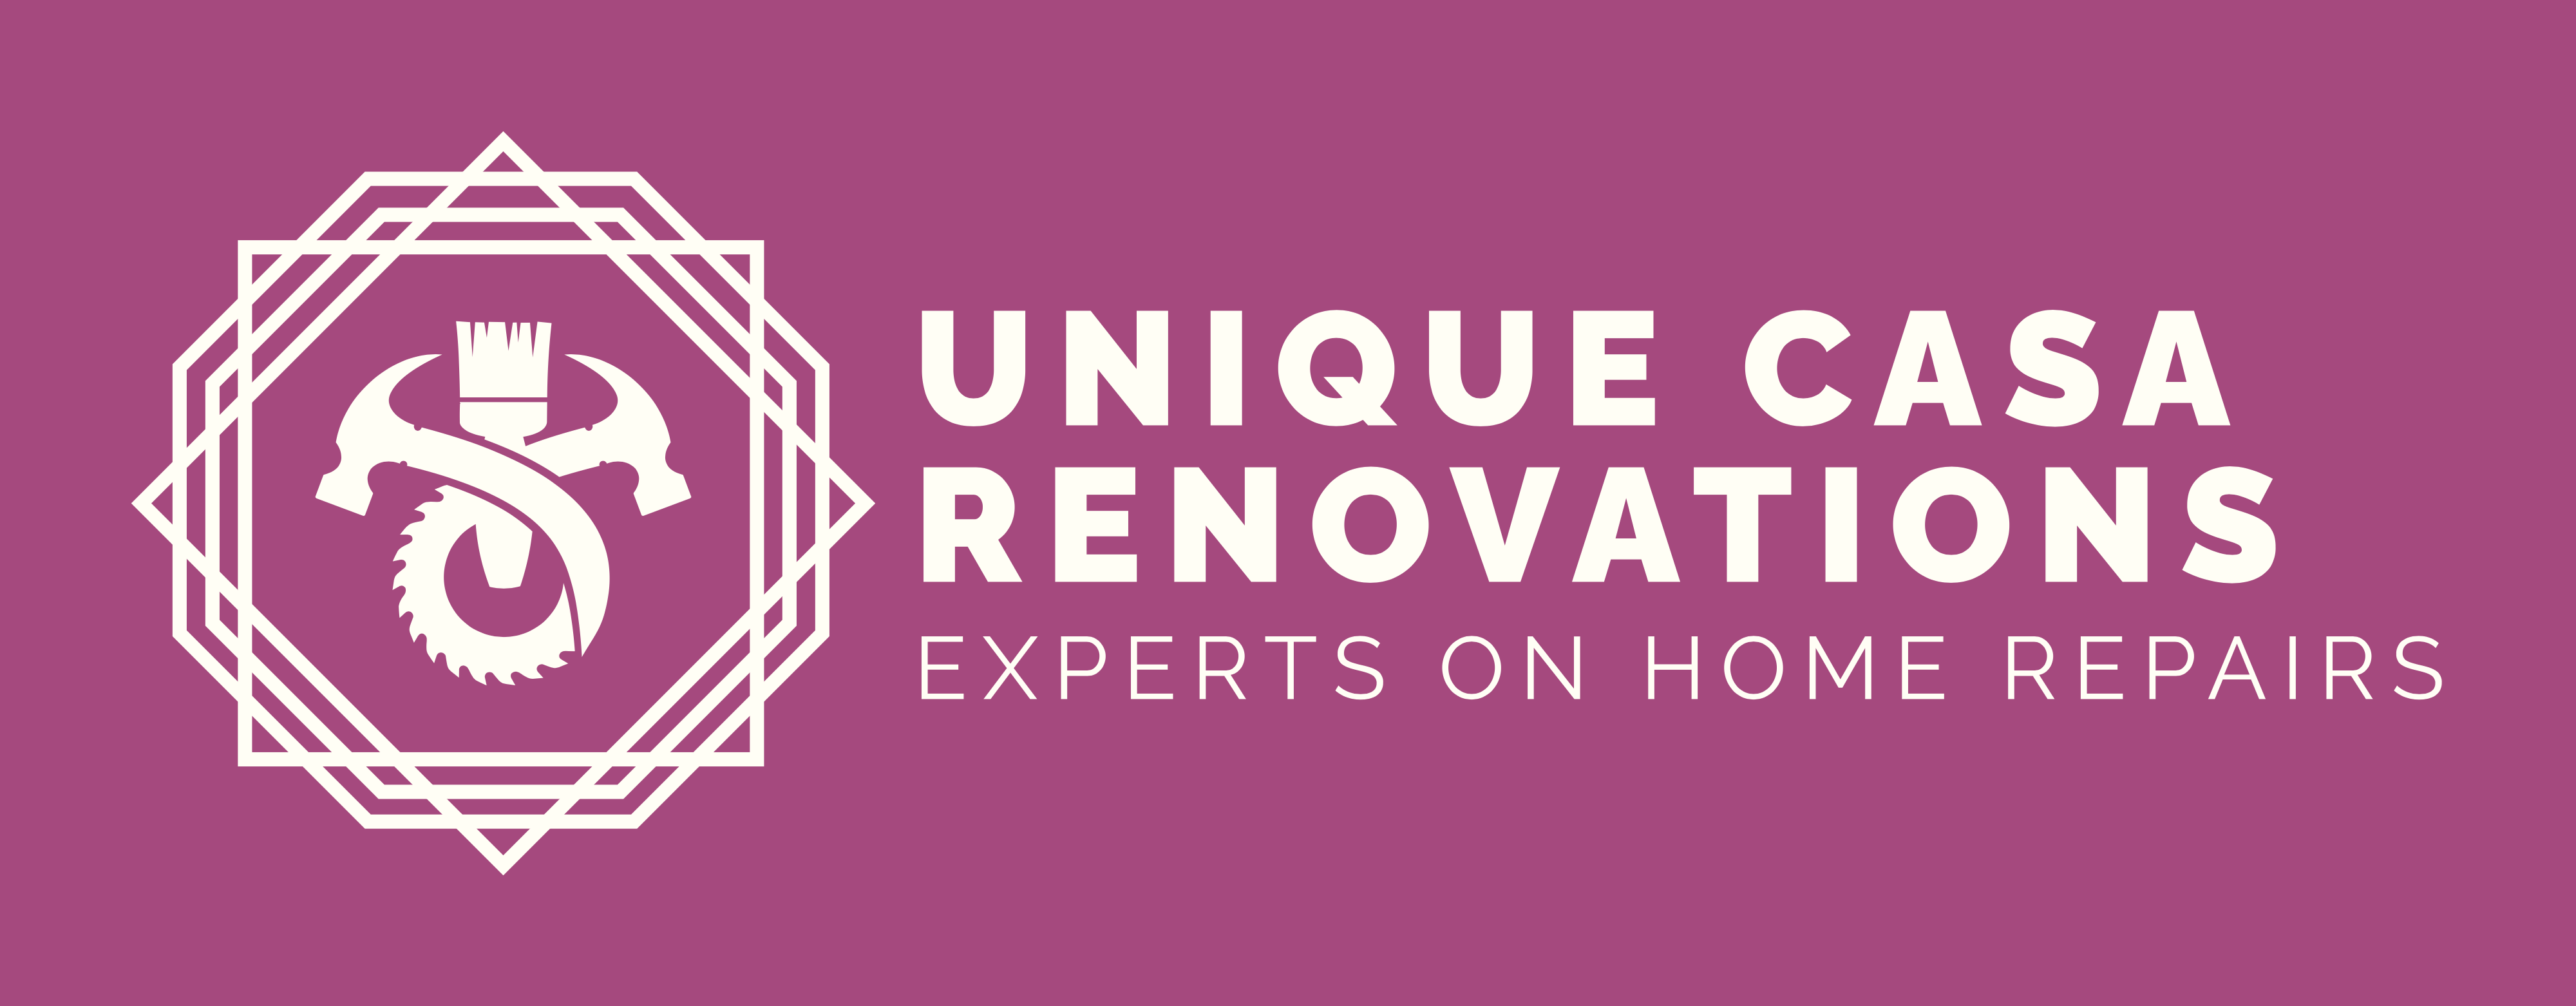 Unique Casa Renovations, LLC Logo